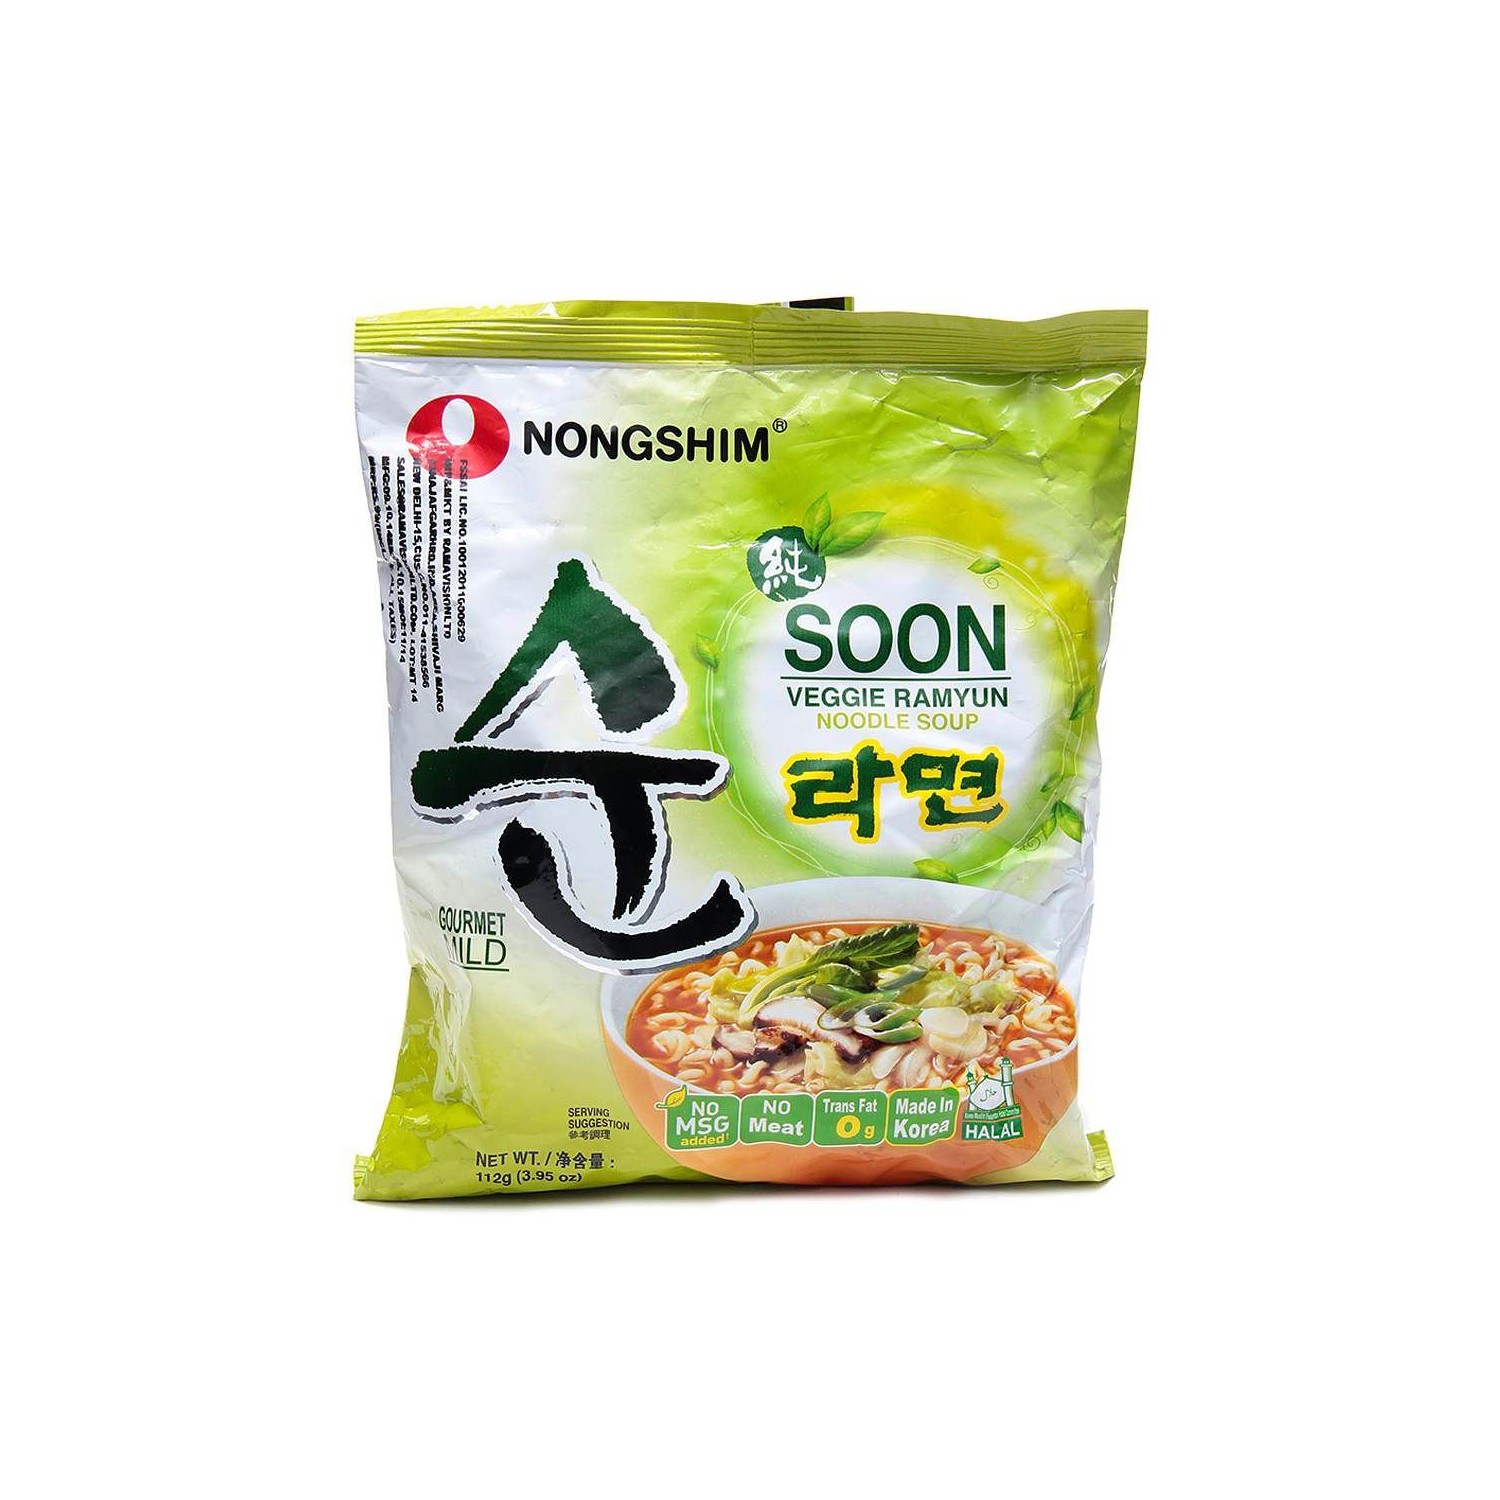 Nongshim Noodles 112g Soon Veggie Ramyun (농심 순라면) No MSG Korean Noodle Soup